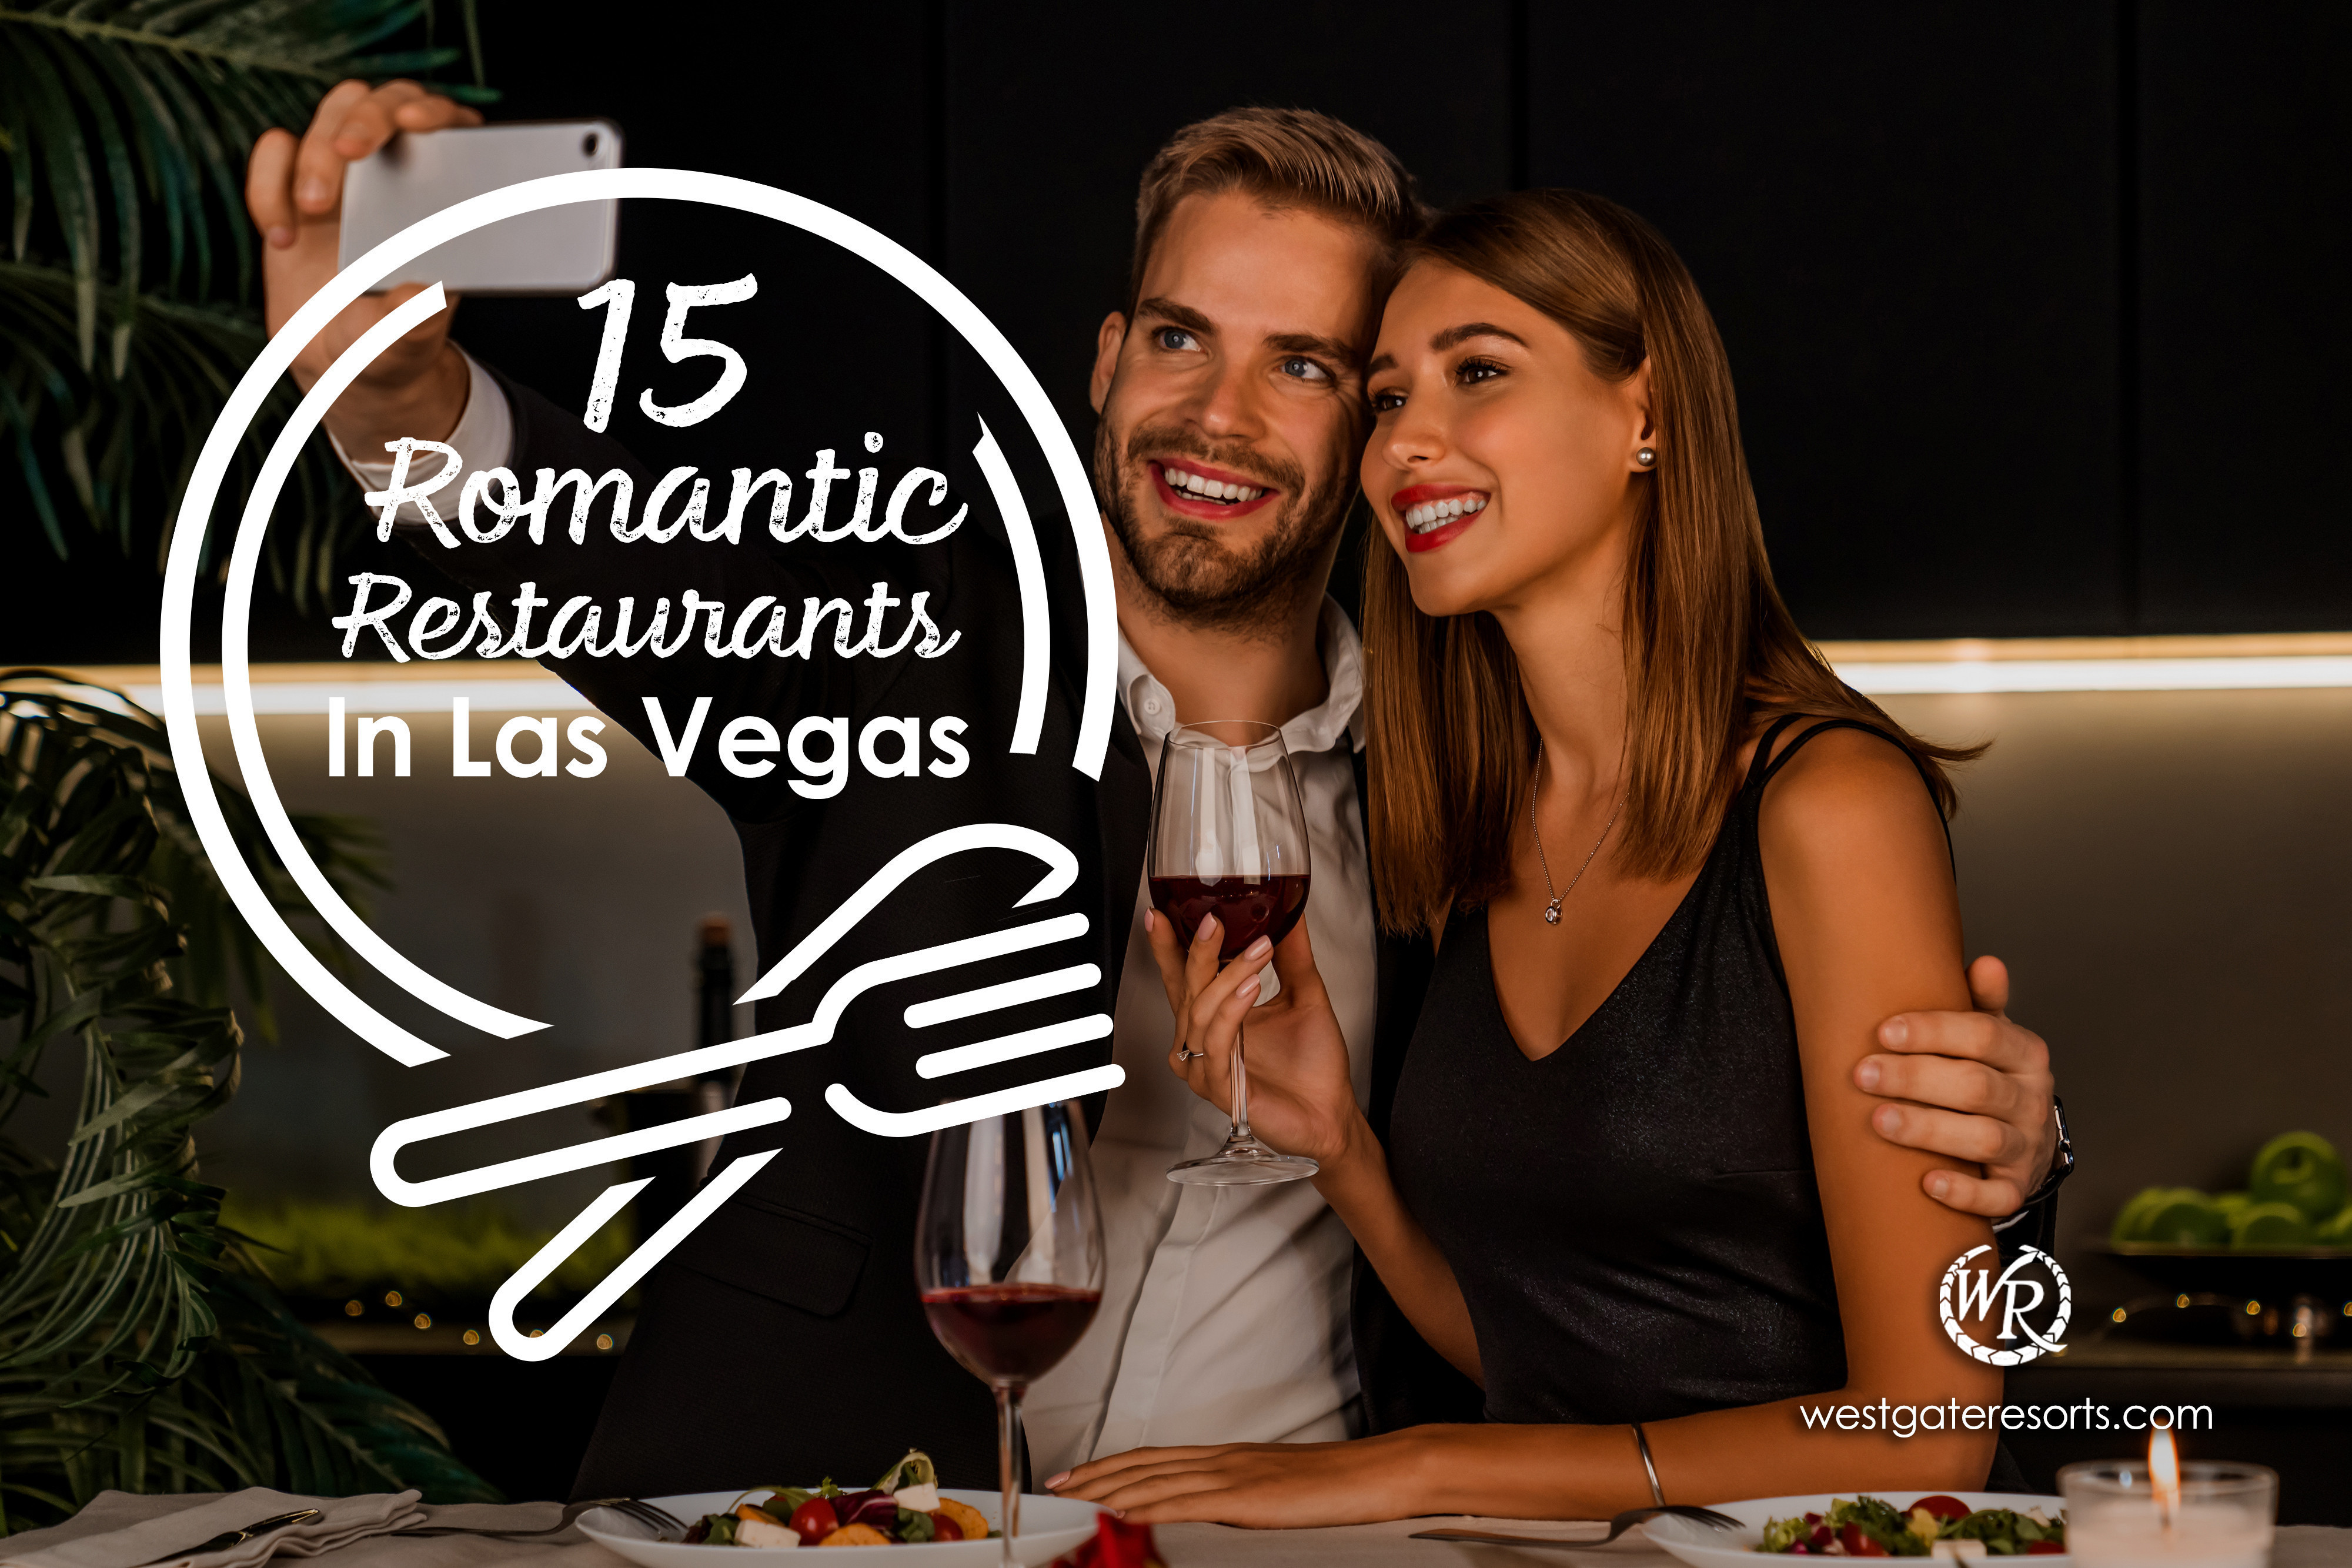 15 Romantic Restaurants in Las Vegas